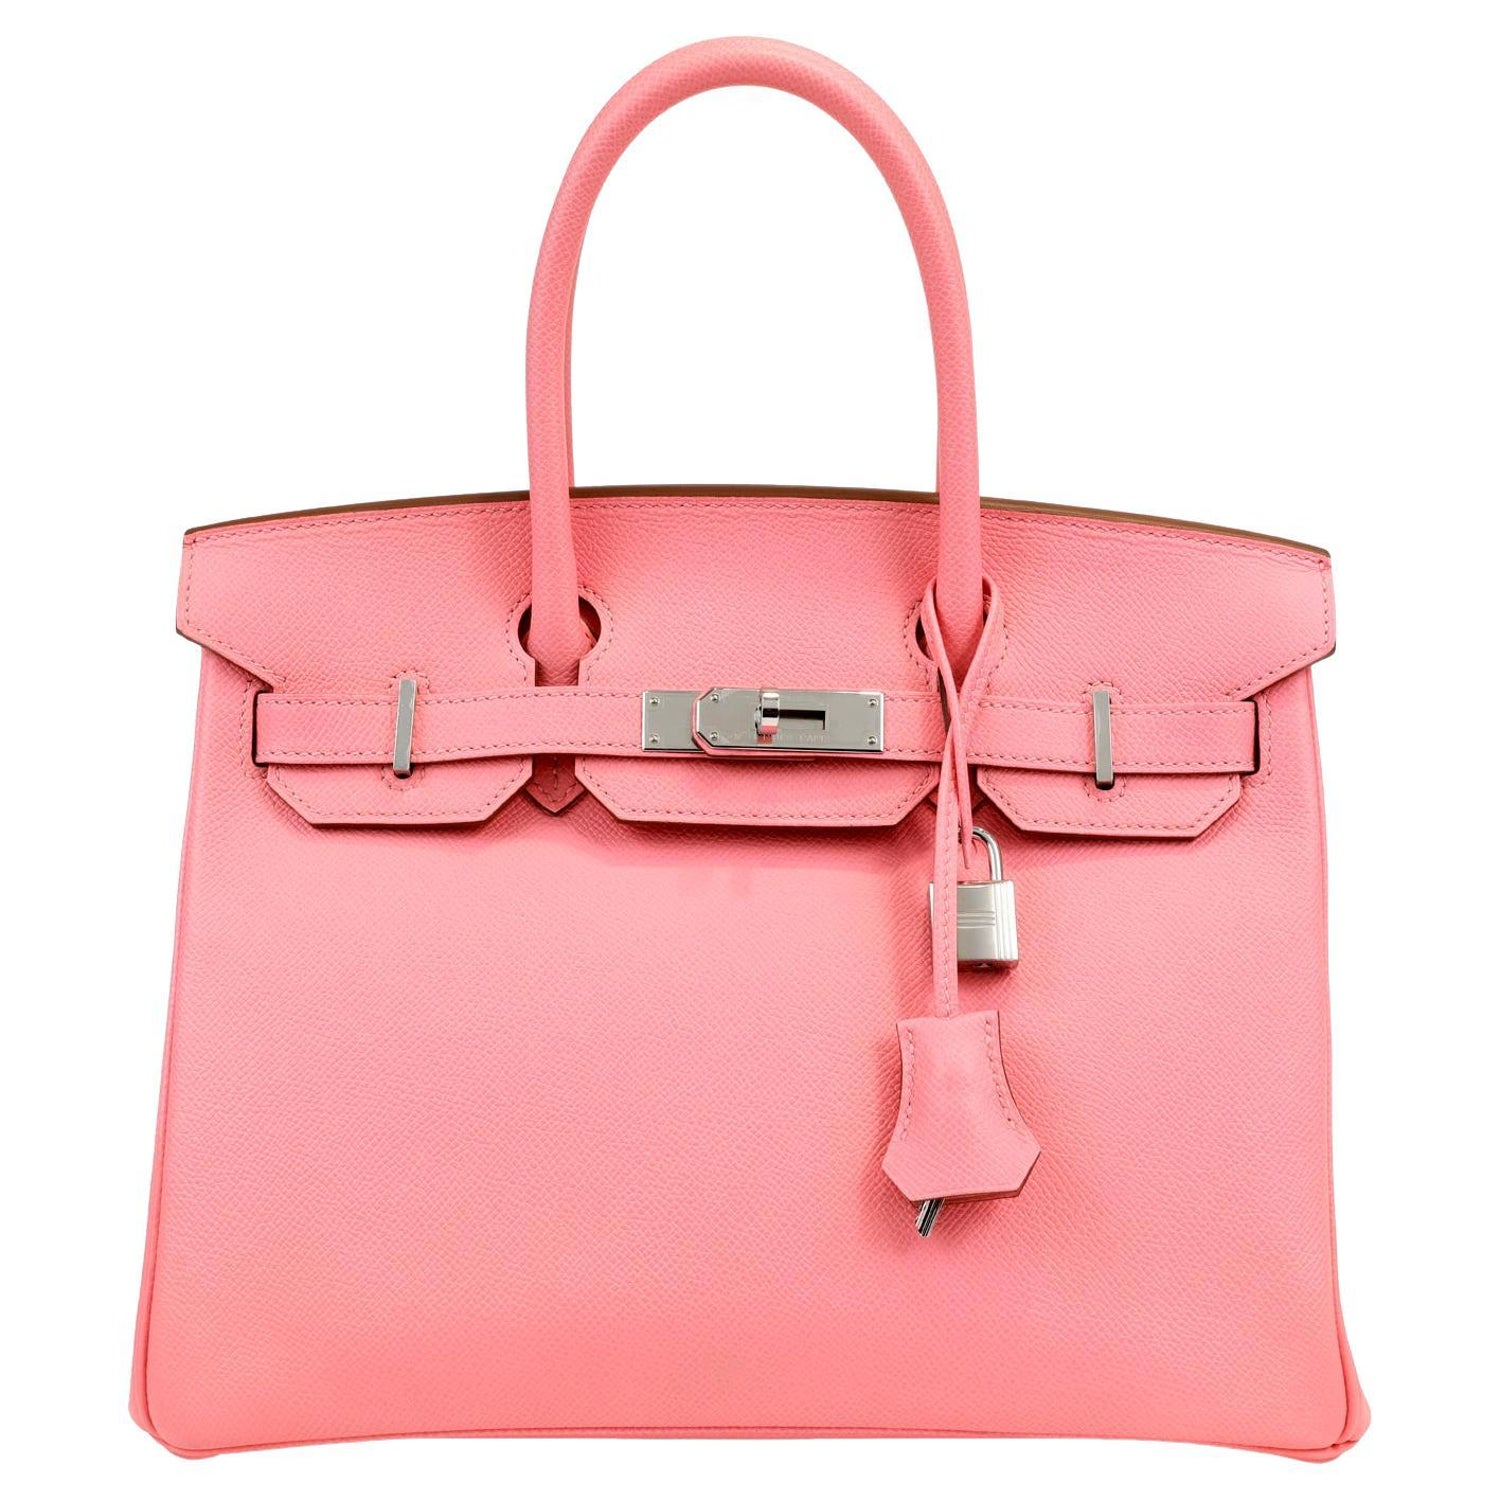 Hermes Pink Birkin - 159 For Sale on 1stDibs